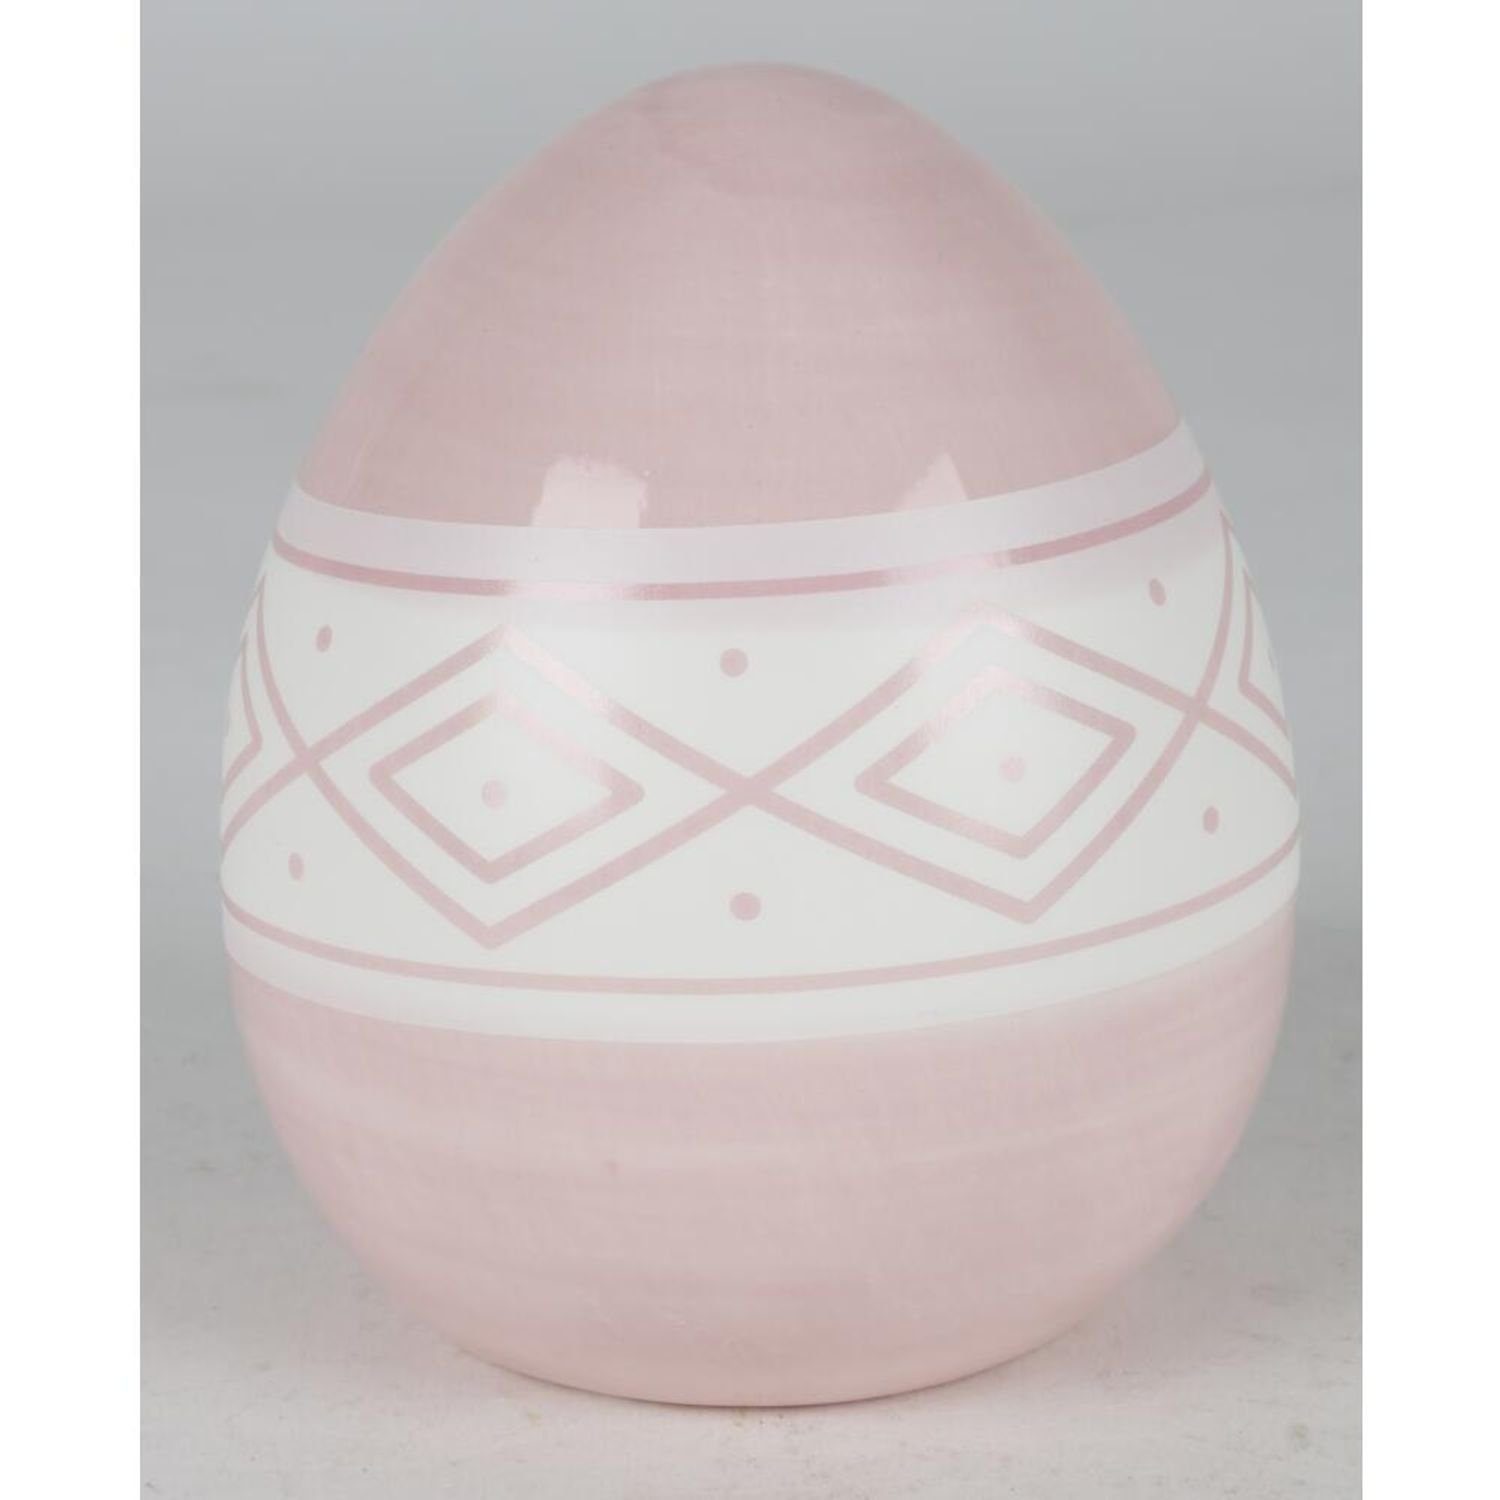 Dekofigur verschiedene Farben BURI 9x Haushalt Dekoration Keramik-Ostereier Ostern wo